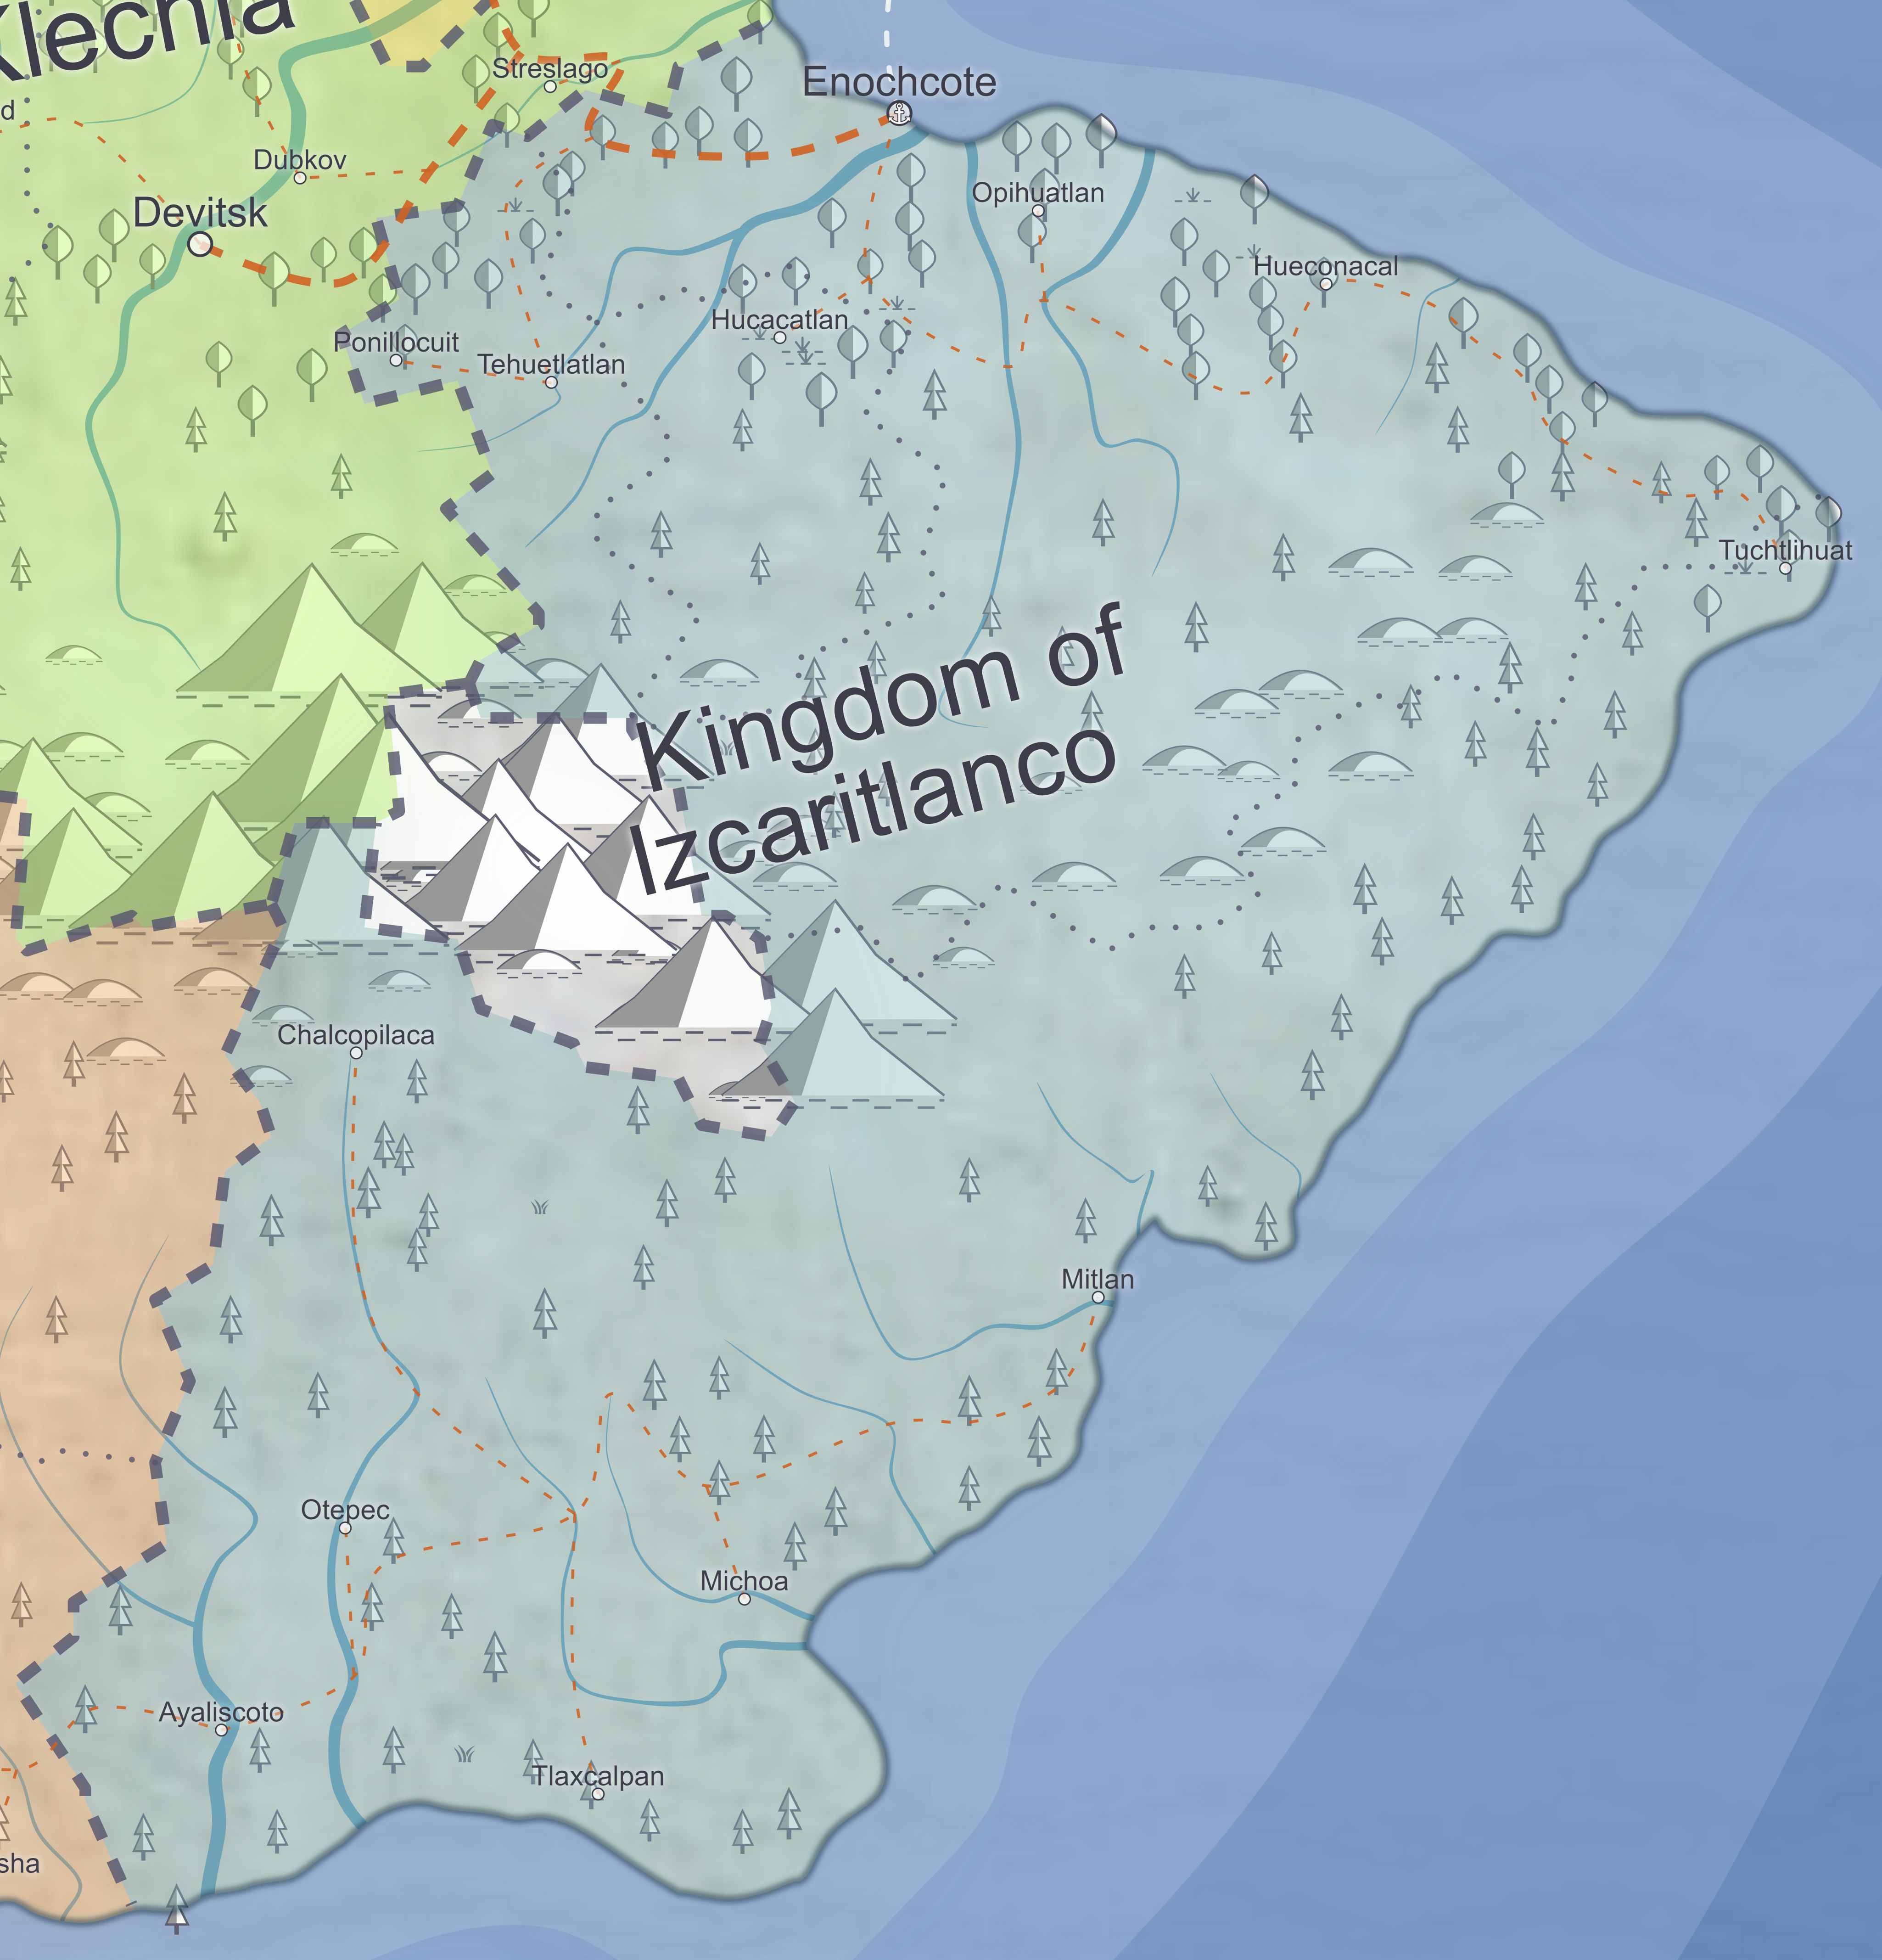 Kingdom of Izcaritlanco